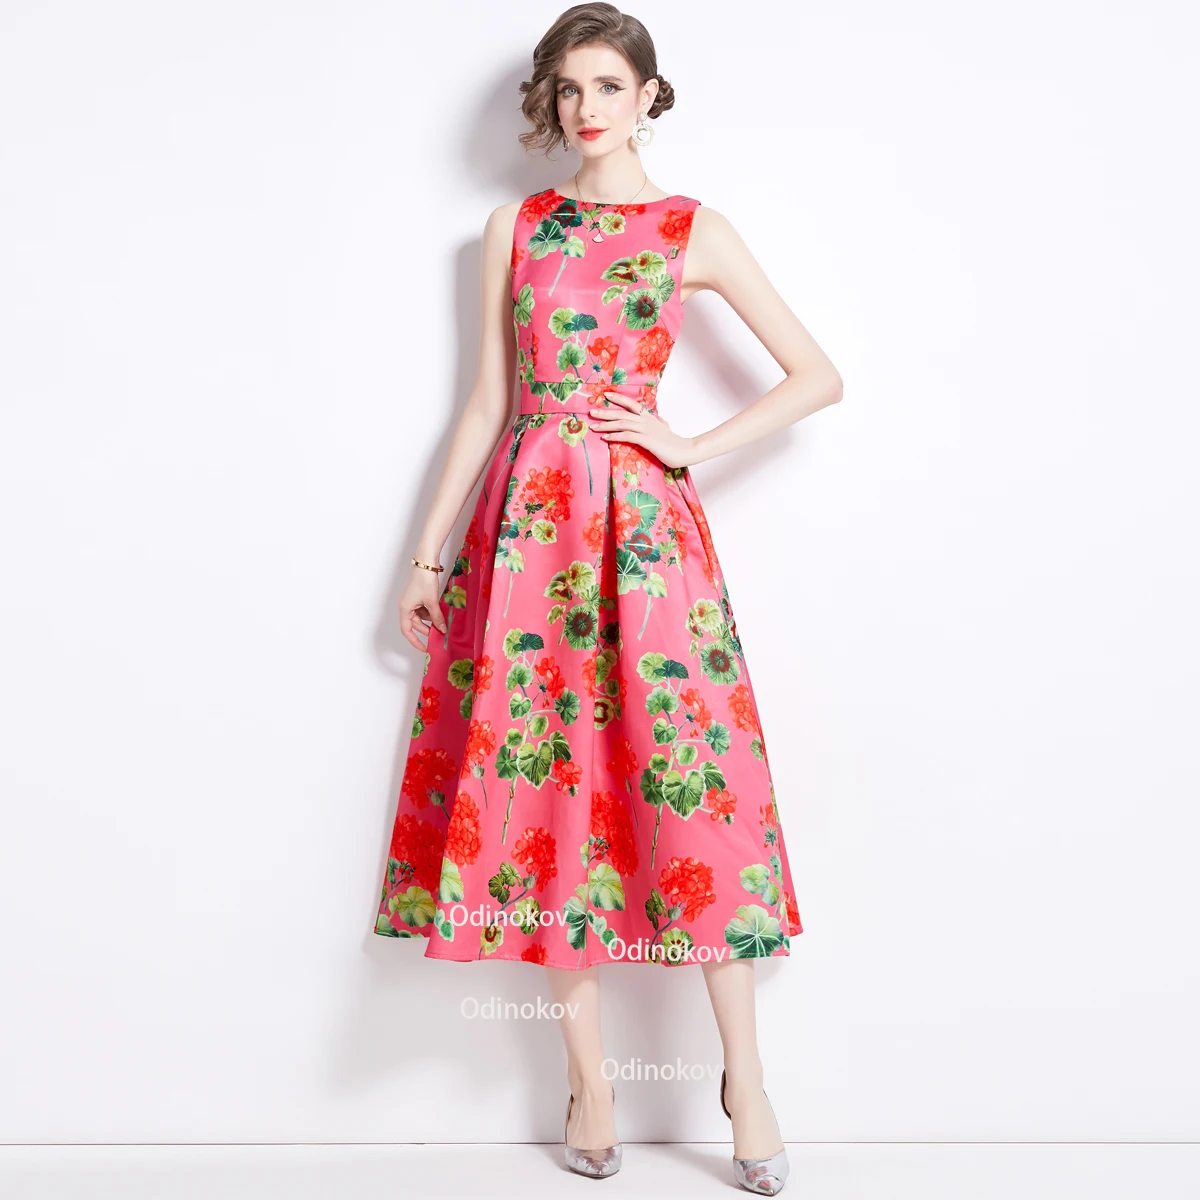 

Sleeveless High-waisted A-line Skirt Three-dimensional Cut Waist Summer Dress Women Wedding Dresses